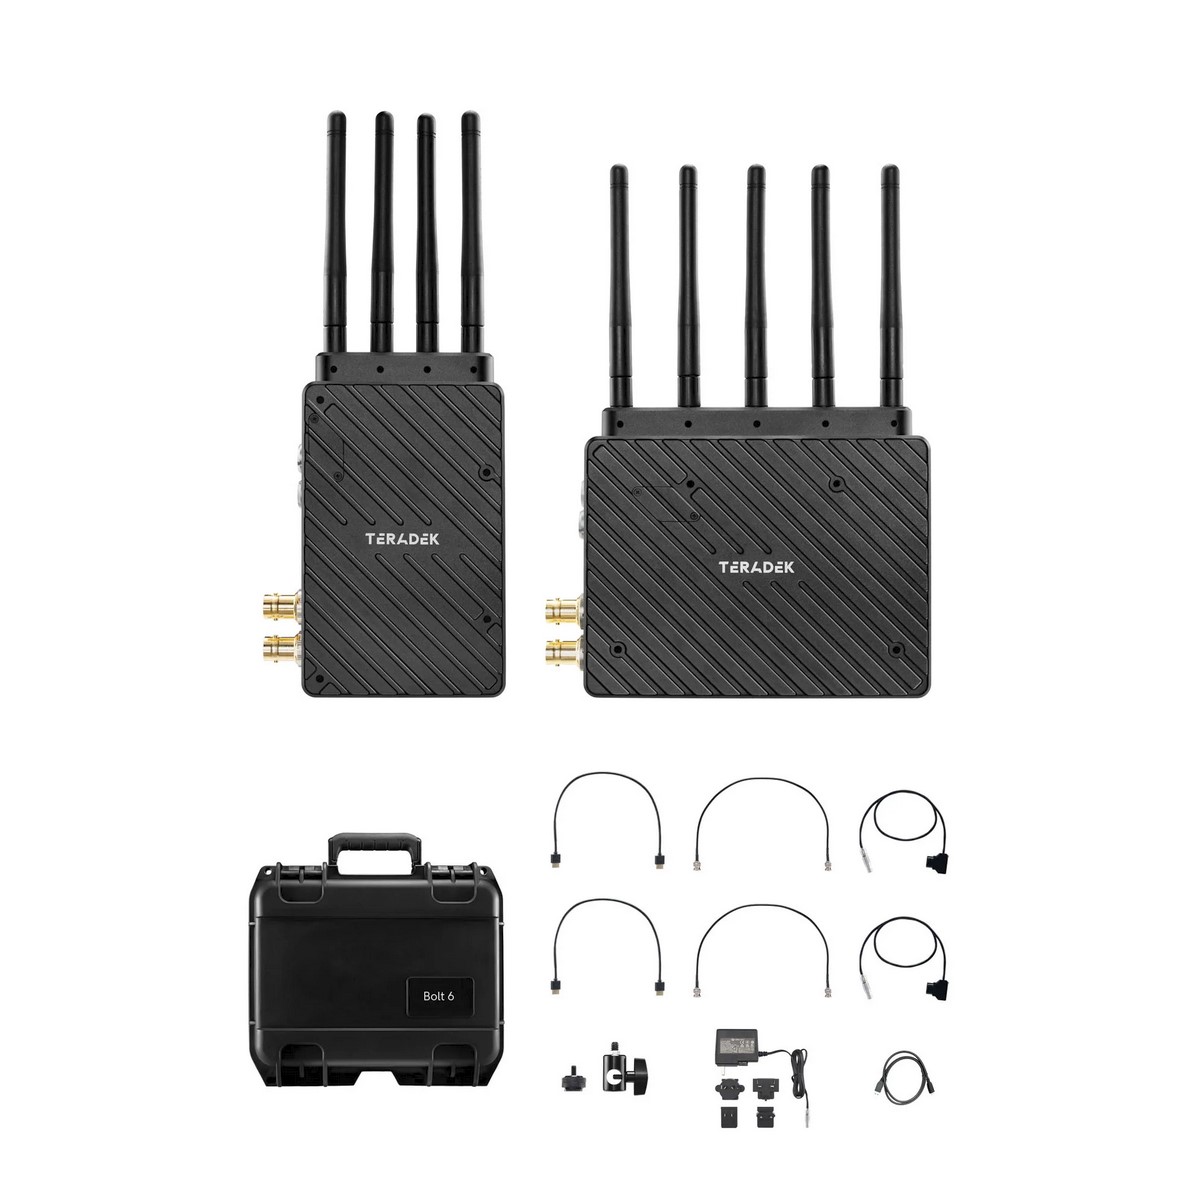 Teradek Bolt 6 XT 750ft Wireless Transmitter/Receiver Set